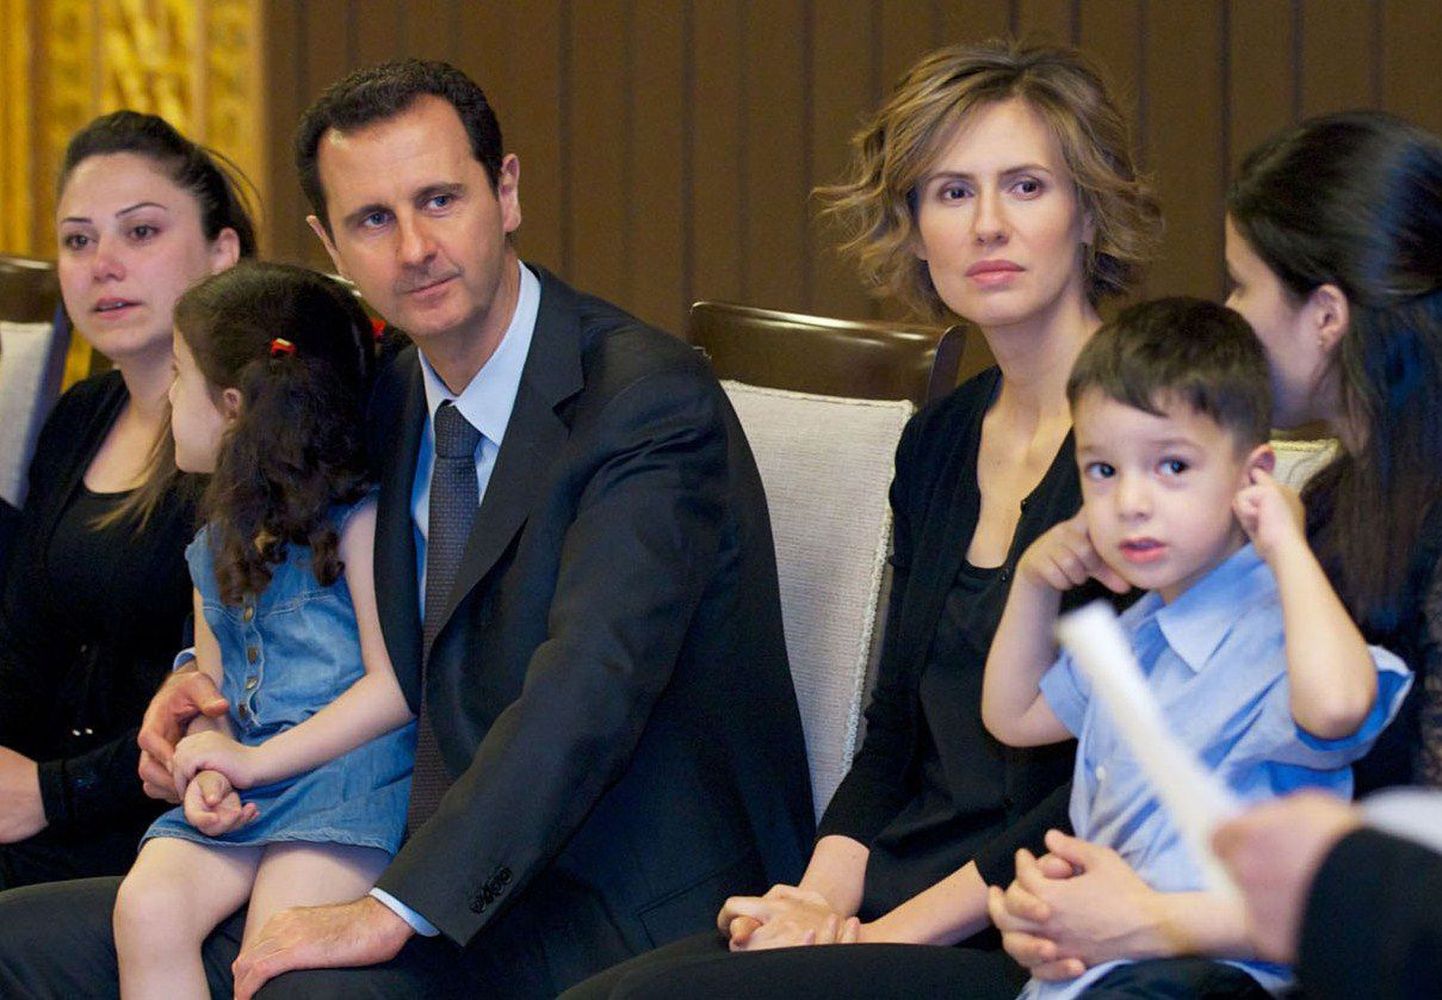 Süüria presidendi Facebooki-lehel avaldatud foto riigi presidendist Bashar al-Assadist, tema abikaasast Asma al-Assadist kohtumas süürlastega, kes on kaotanud kodusõjas valitsuse poolel võidelnud lähedasi.